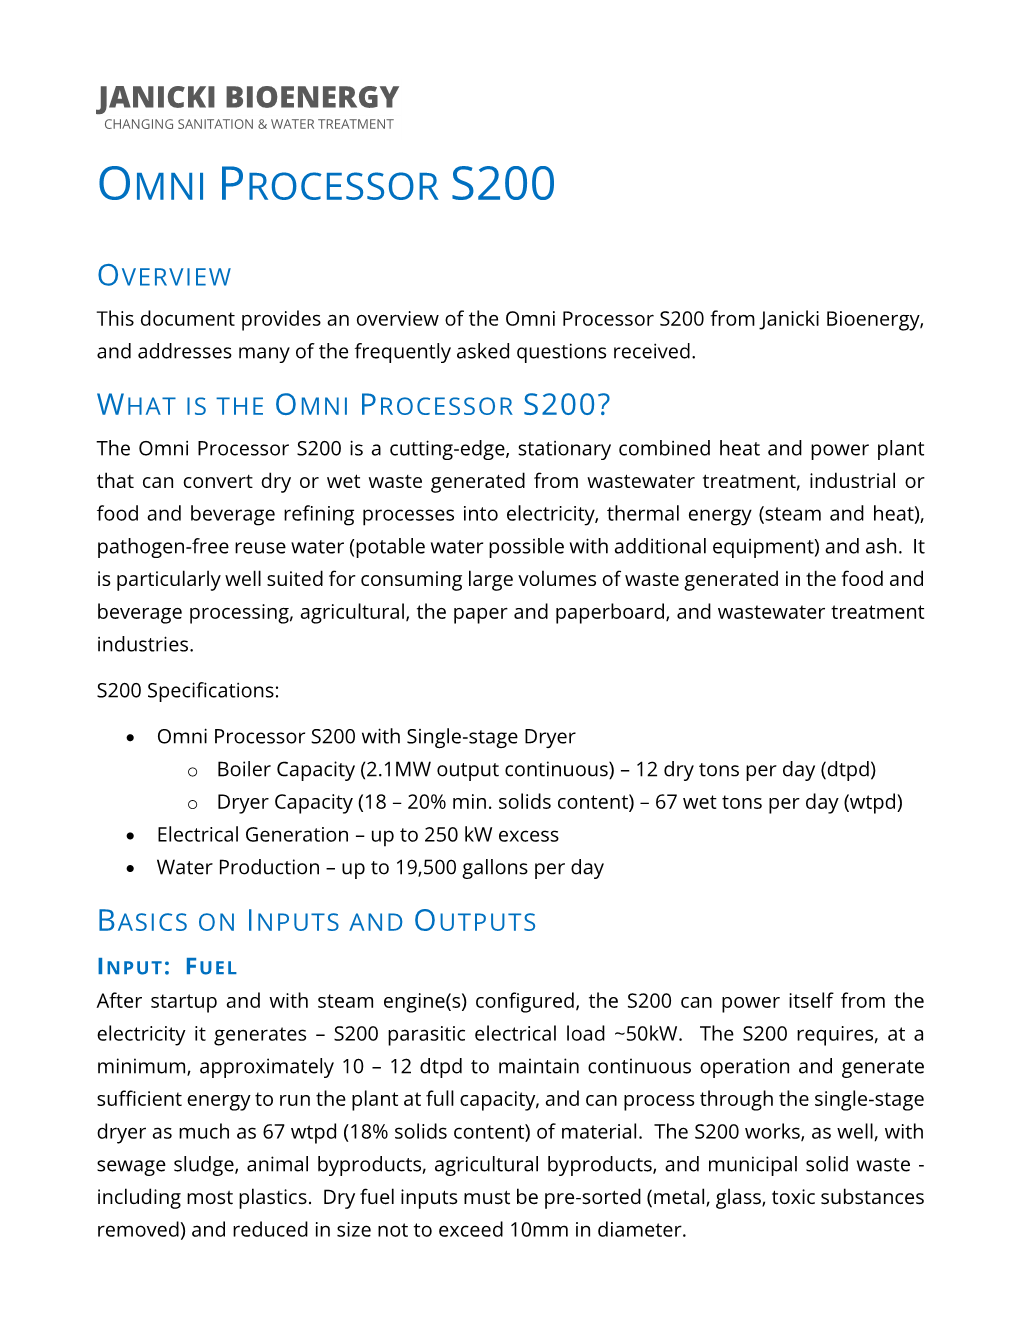 Omni Processor S200